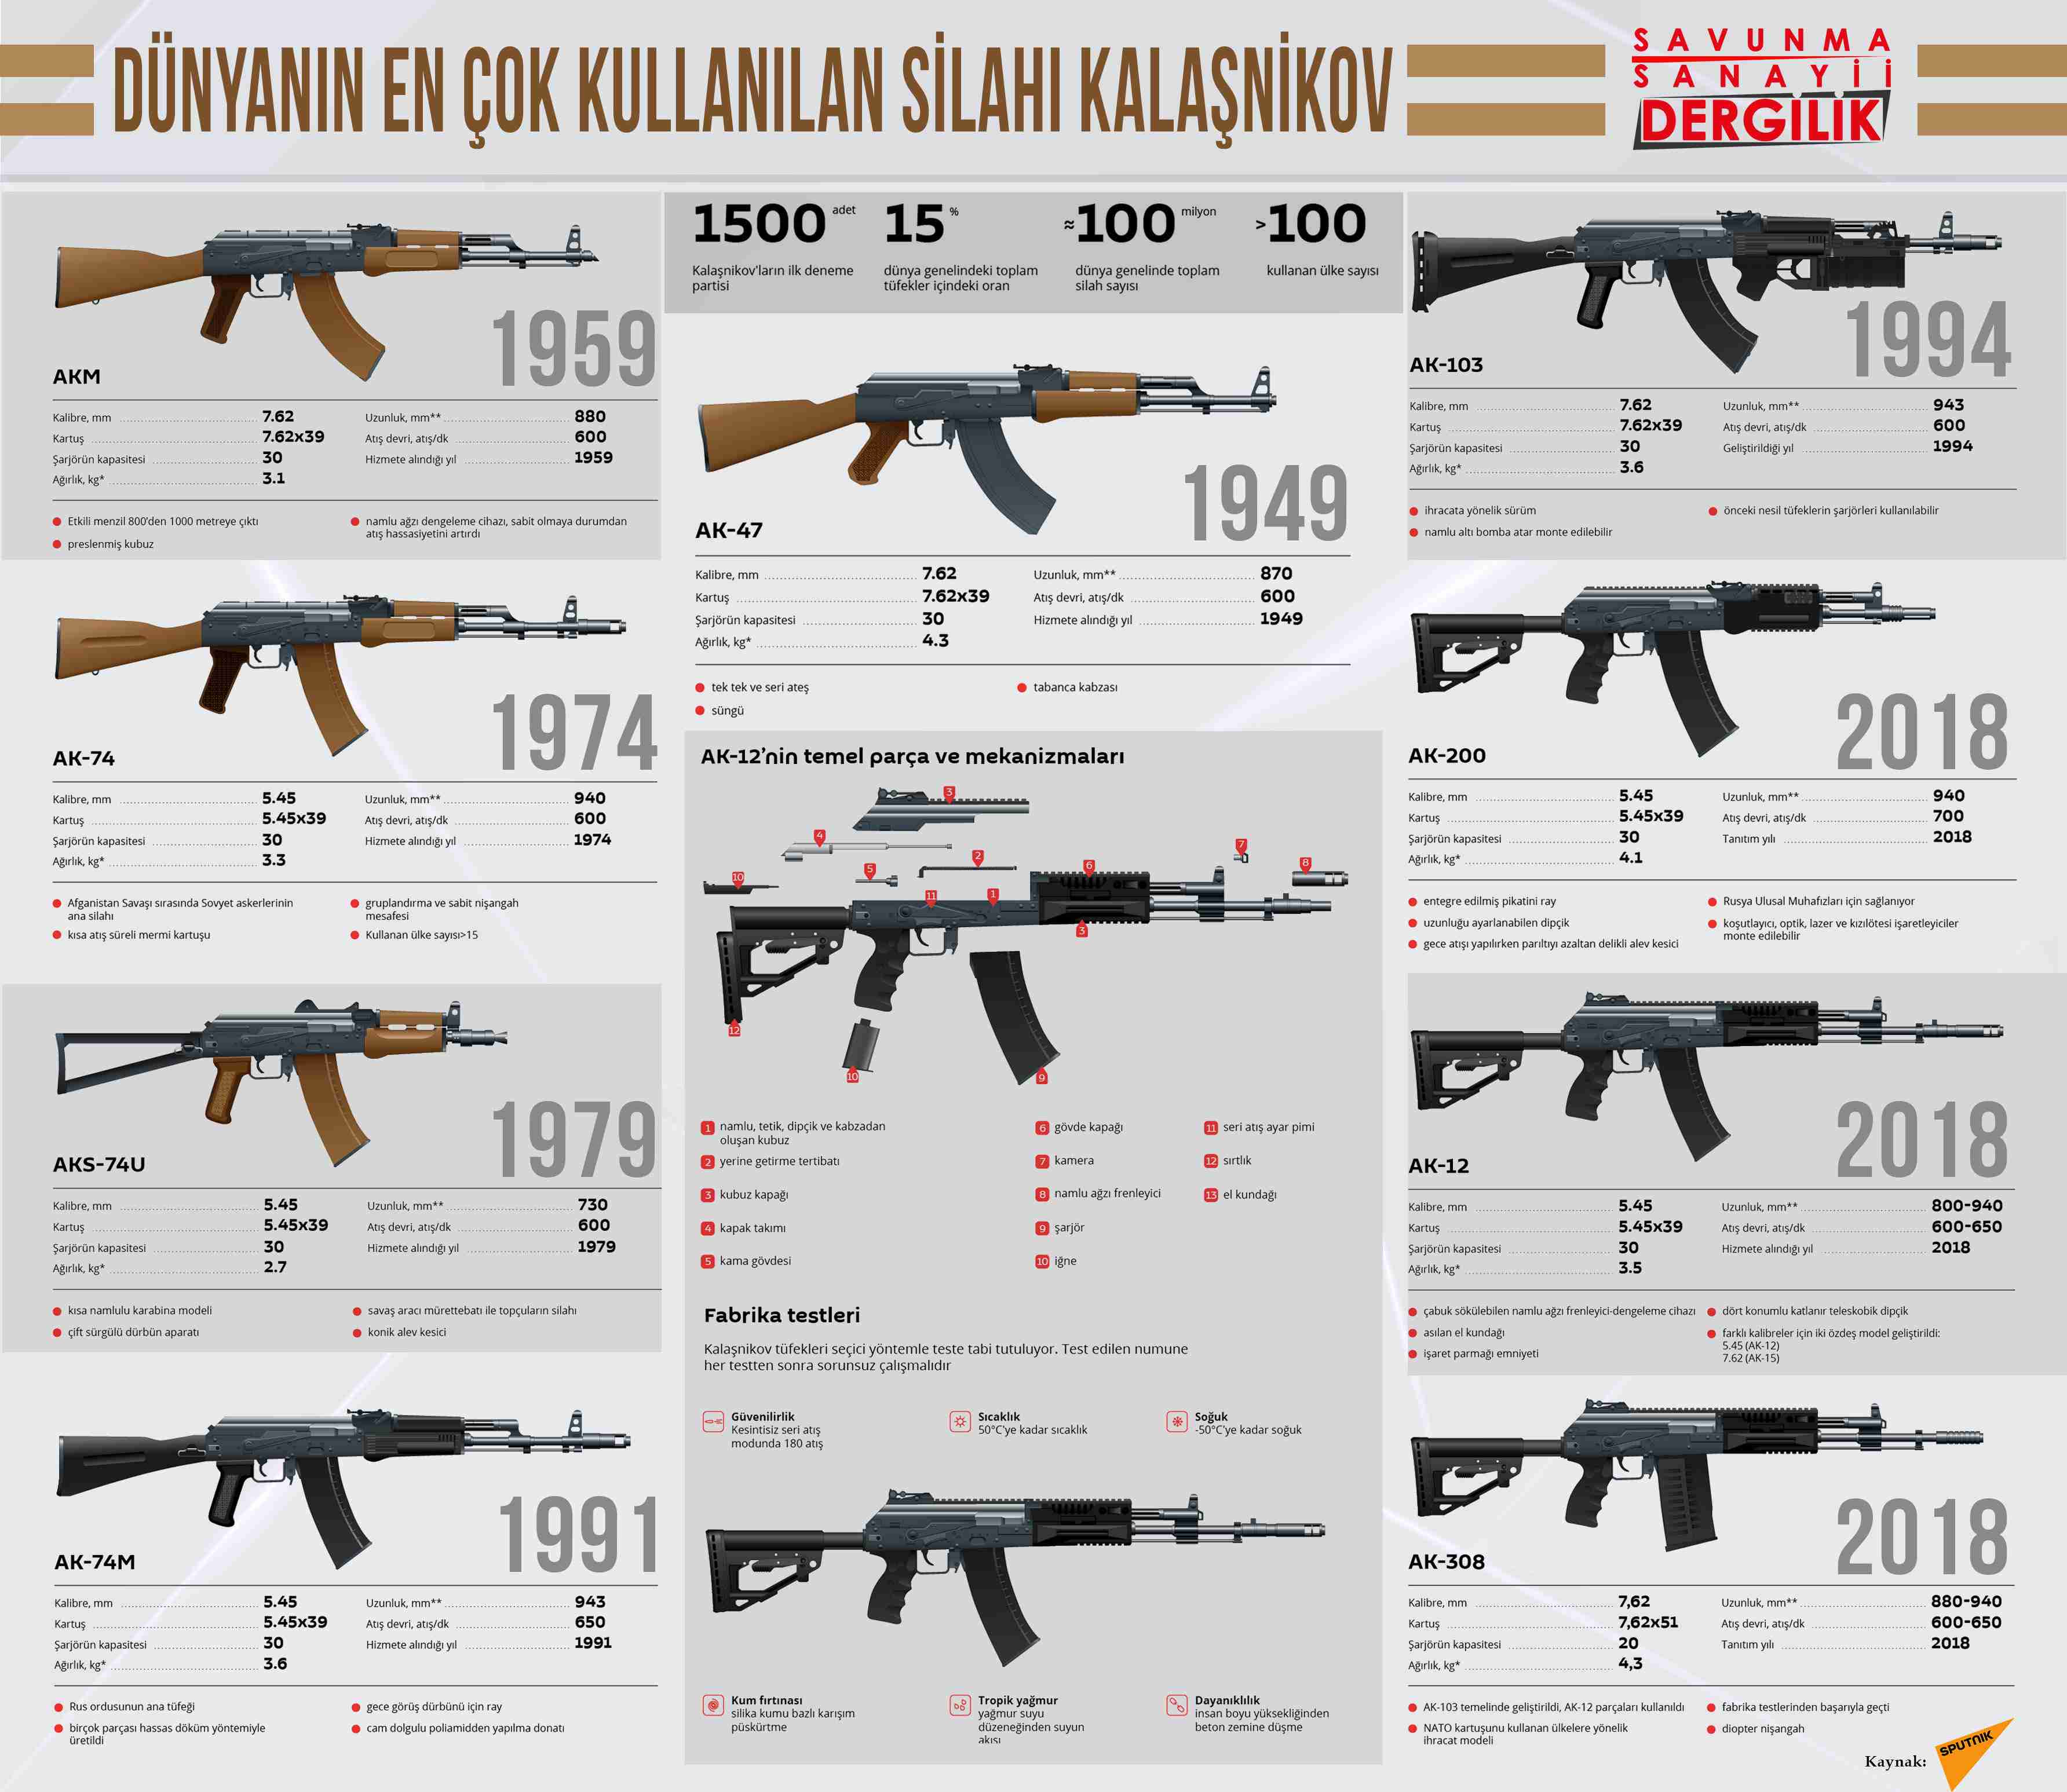 Dünyanın en çok kullanılan silahı Kalaşnikov